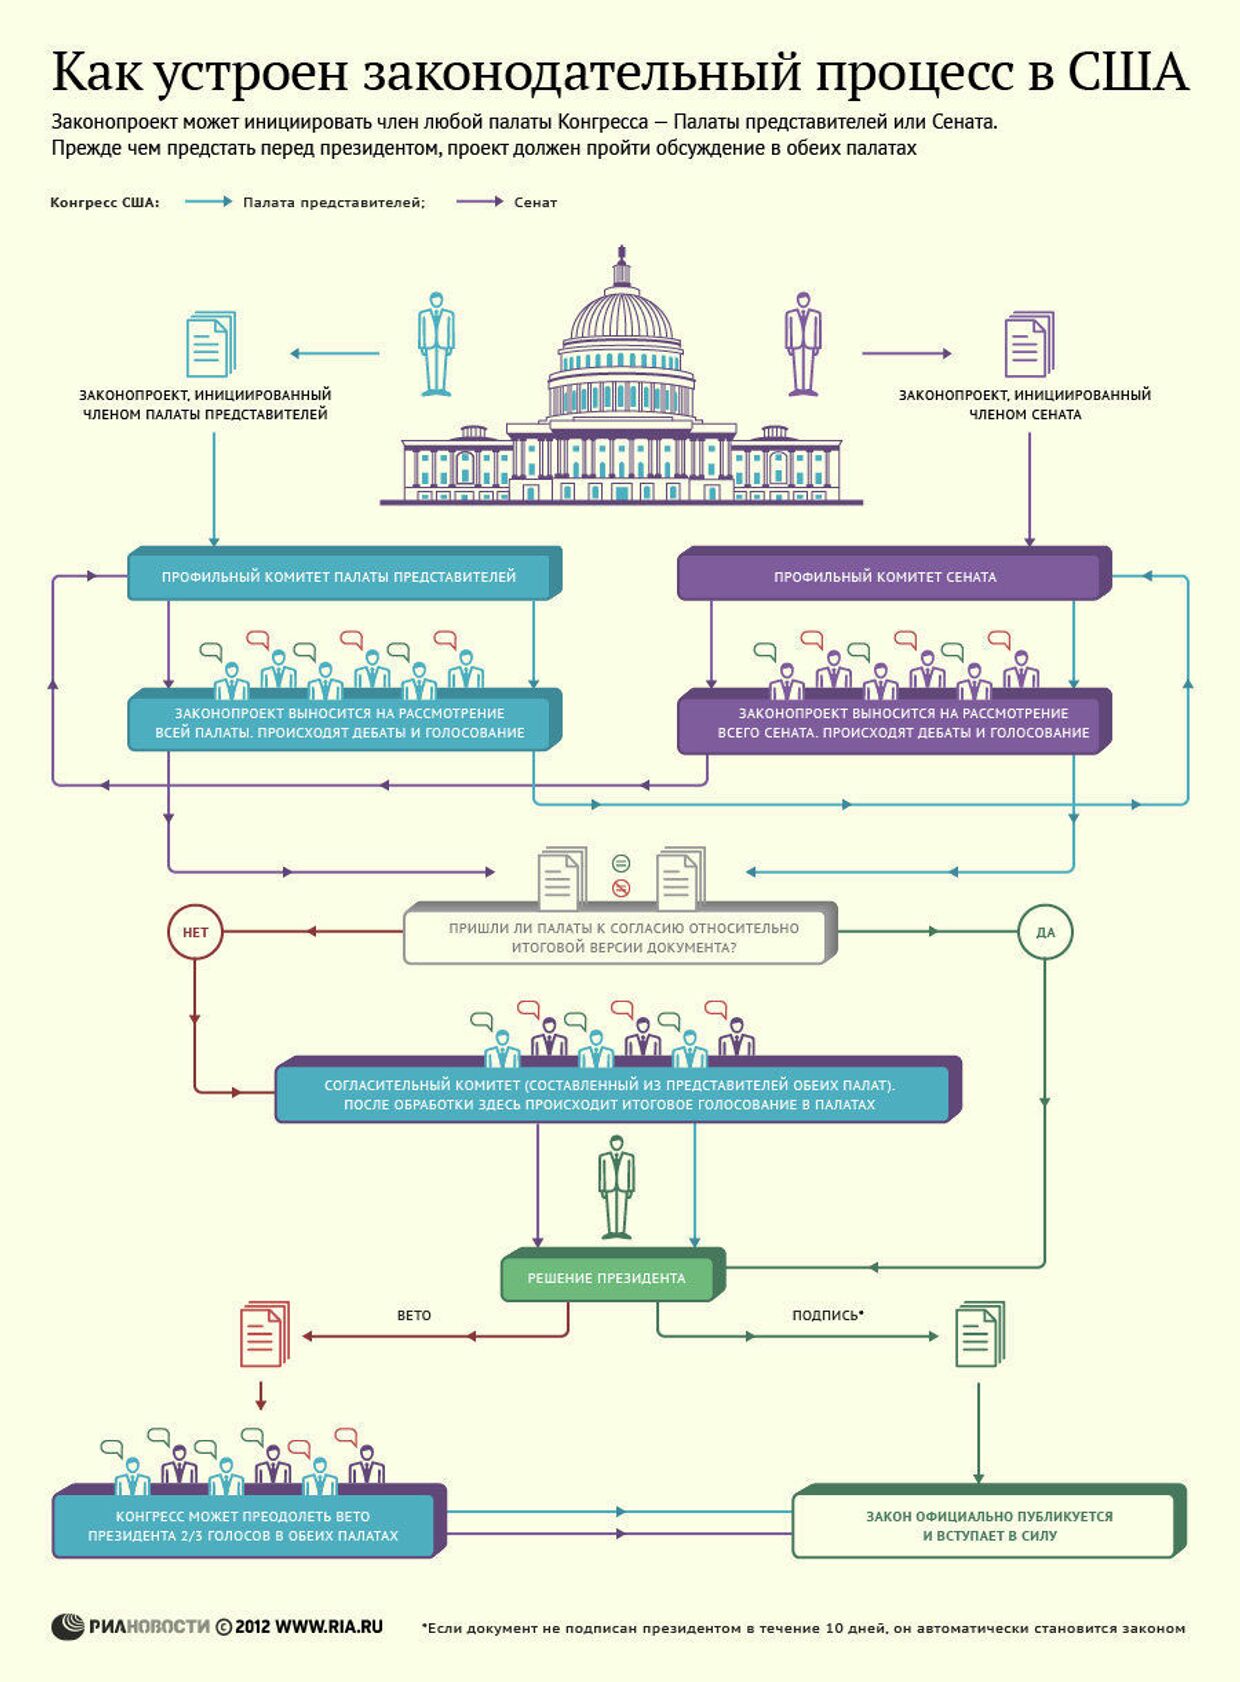 Как выглядит законодательный процесс в США